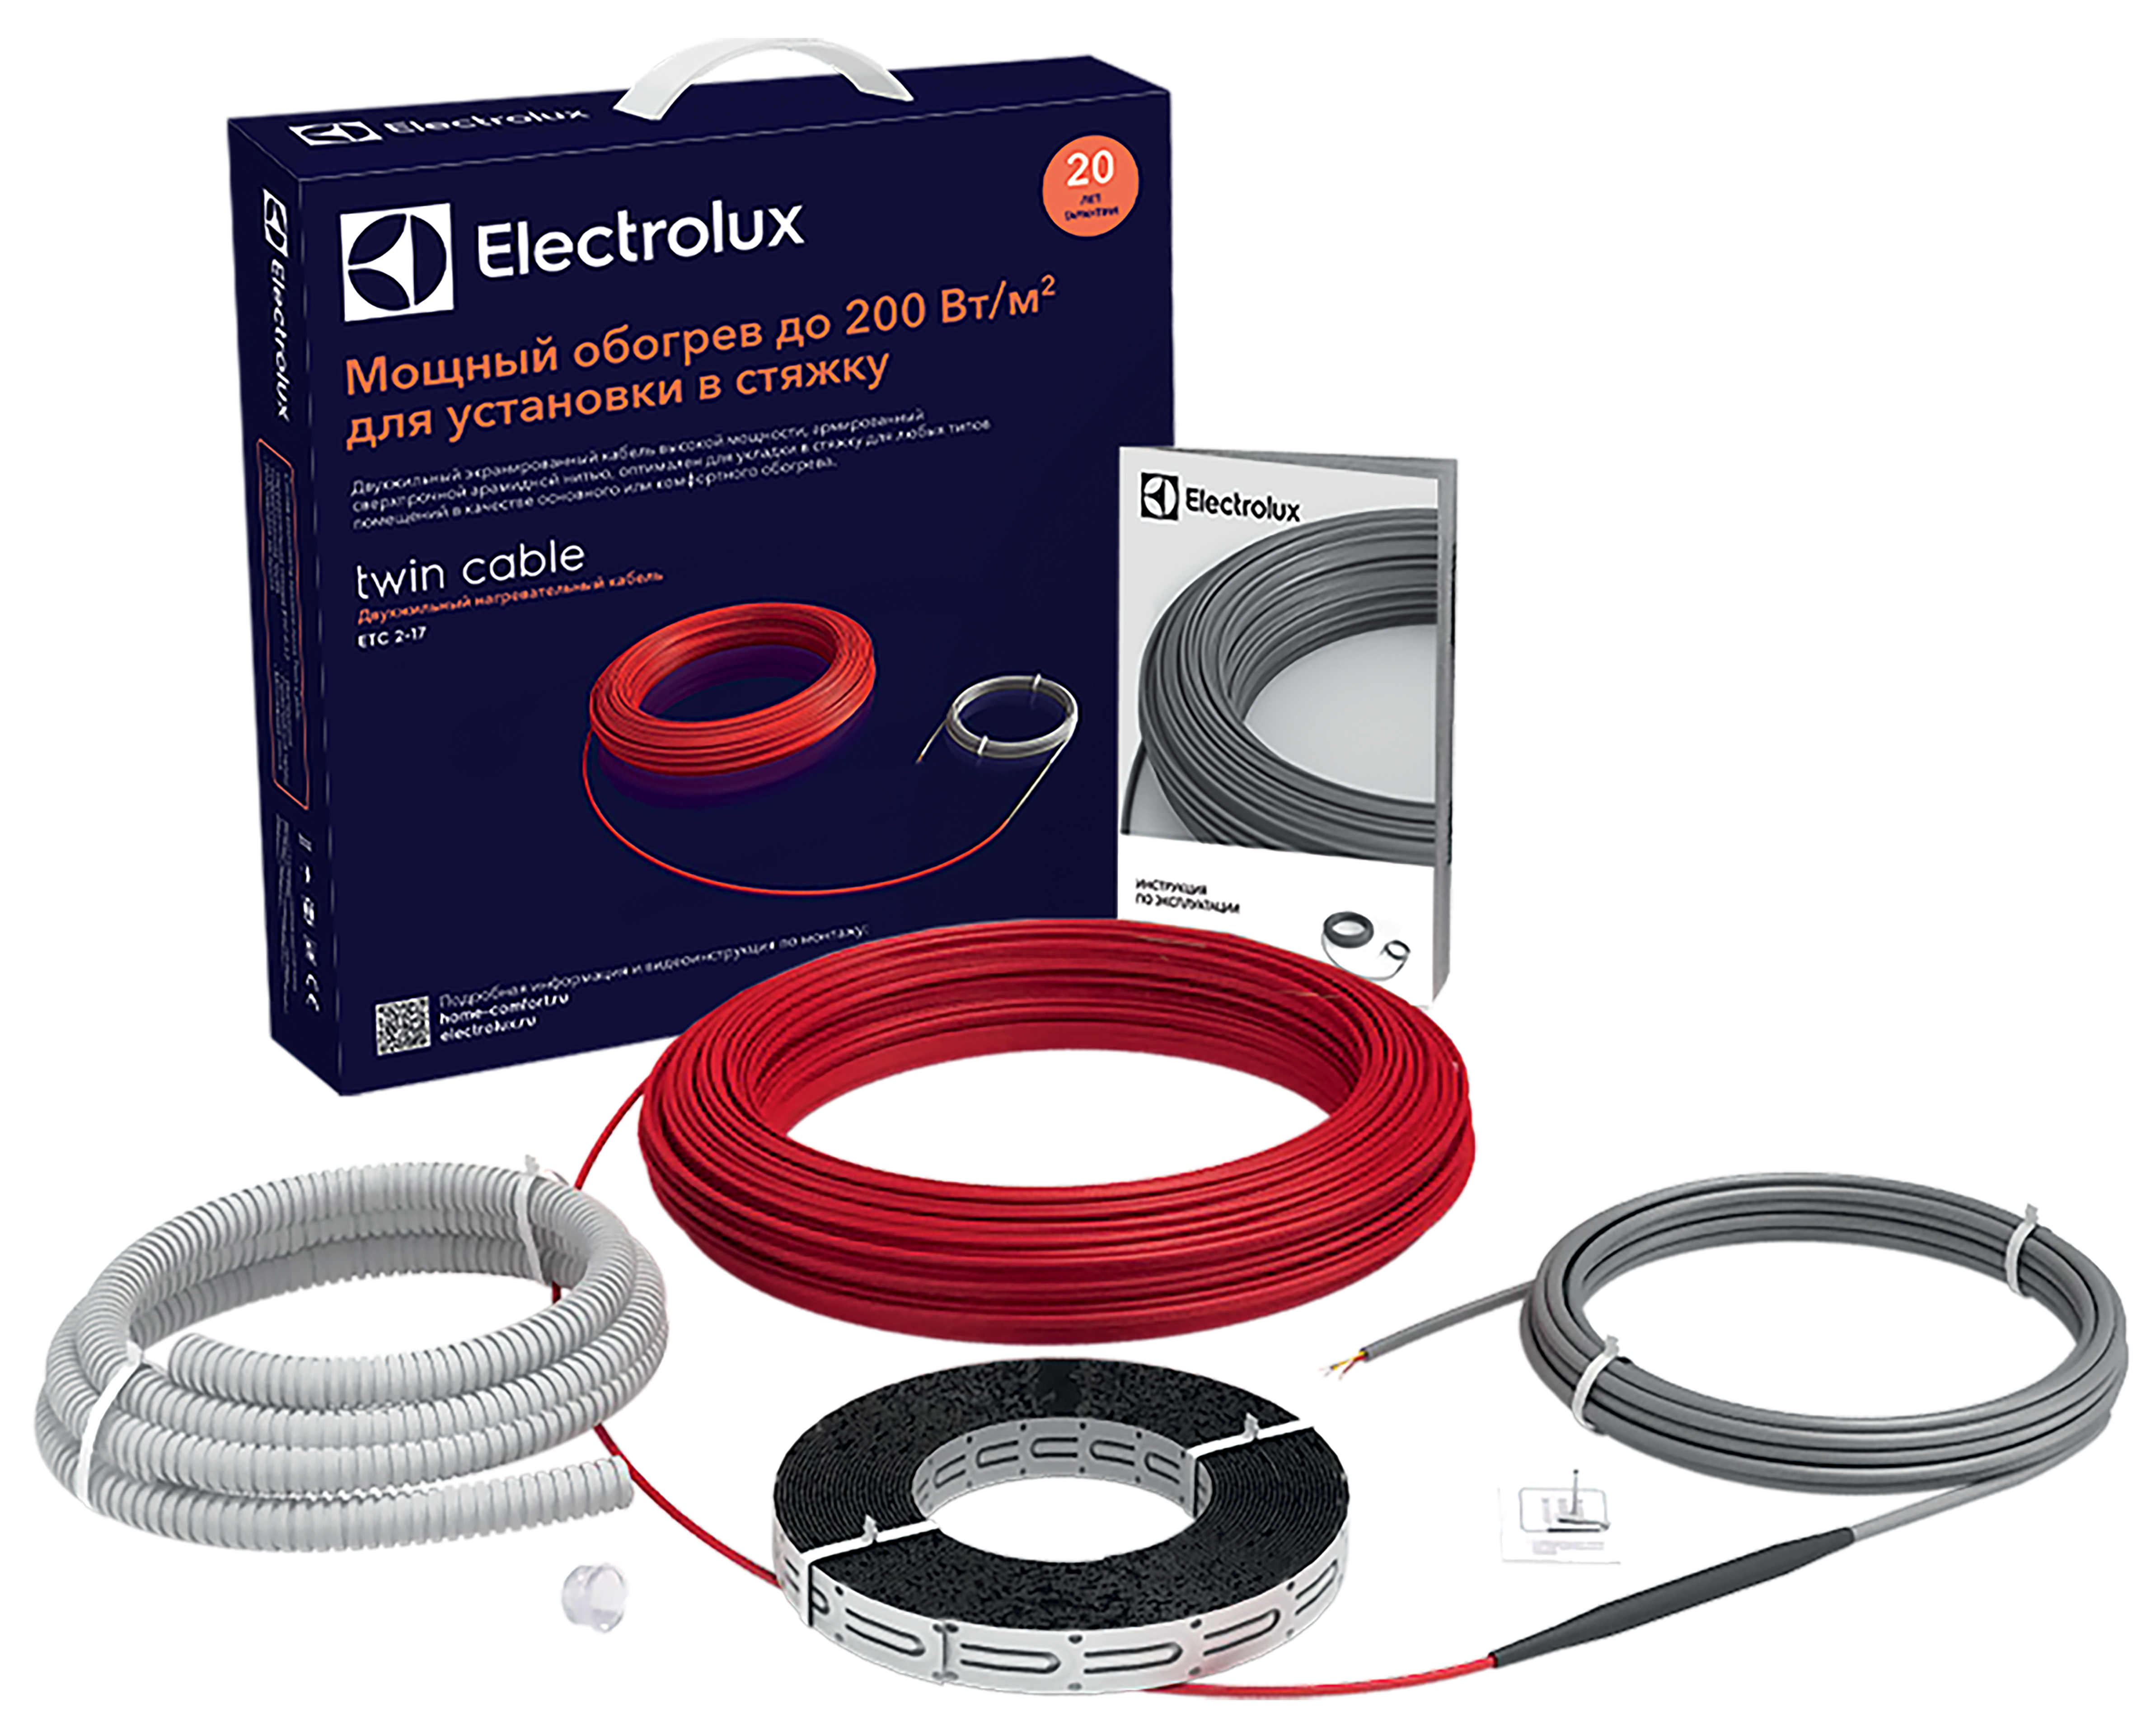 Тепла підлога Electrolux під ламінат Electrolux Twin Cable ETC 2-17-200